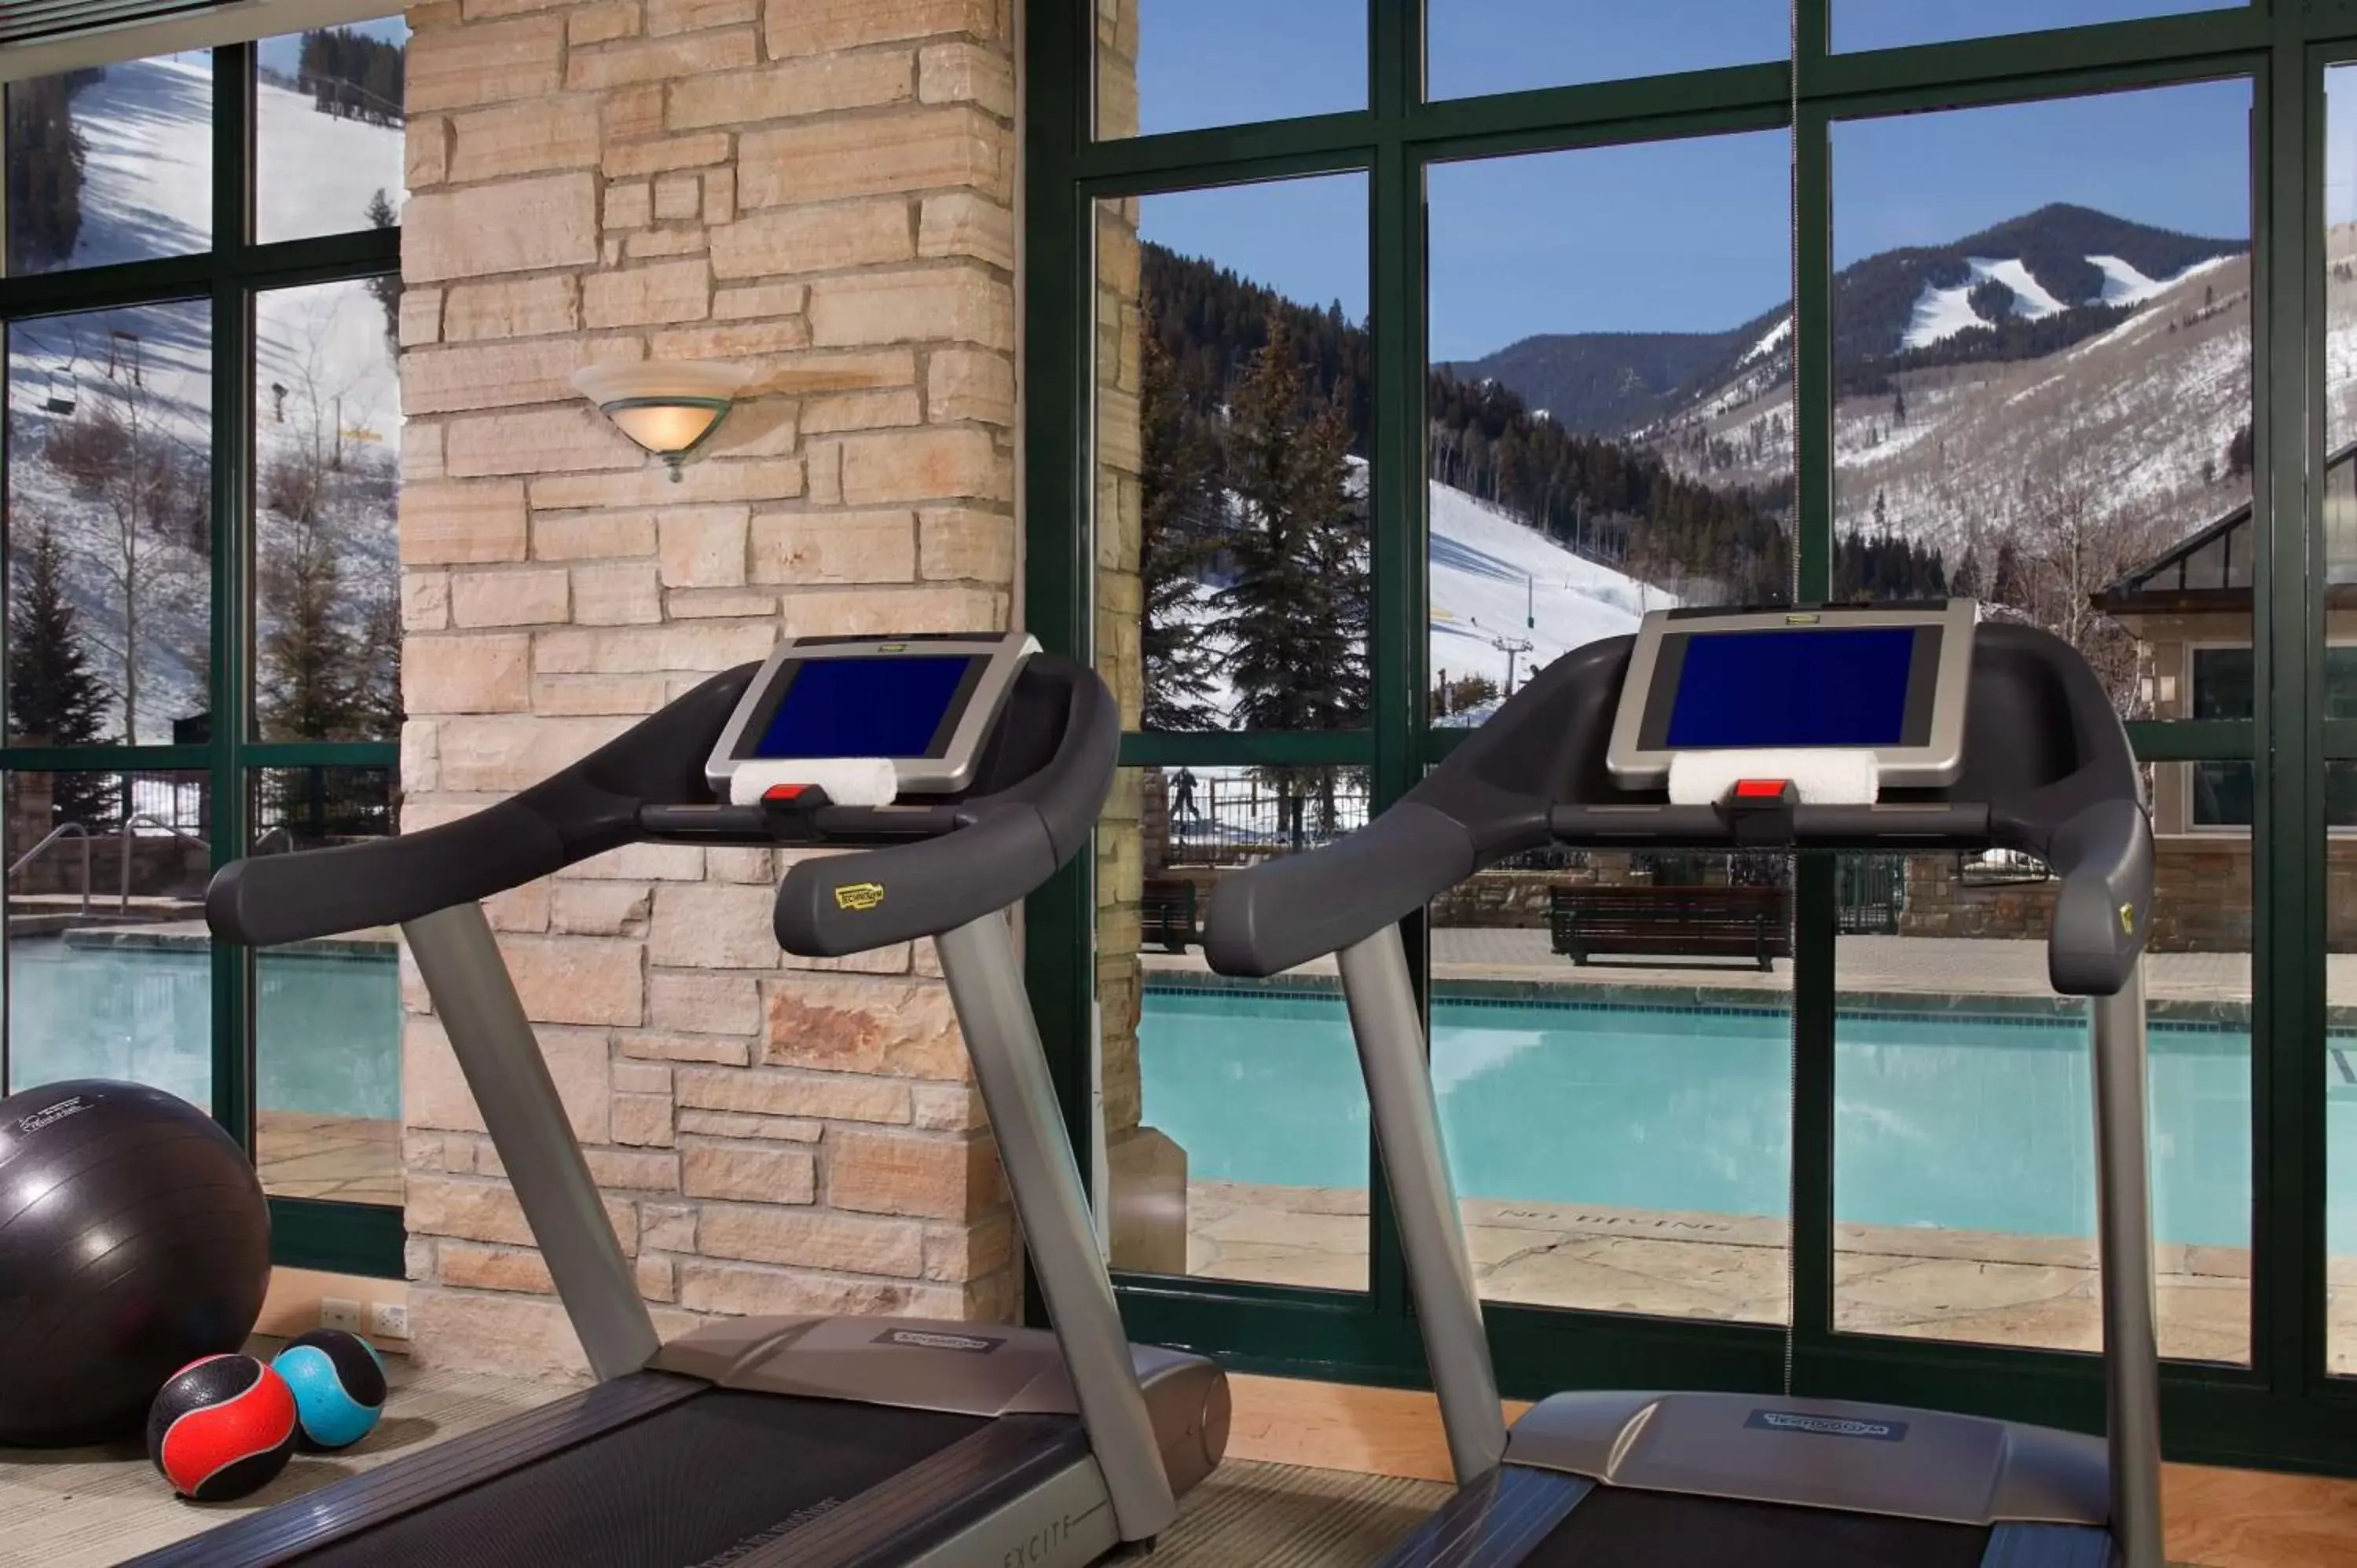 Fitness centre/facilities, Fitness Center/Facilities in Park Hyatt Beaver Creek Resort